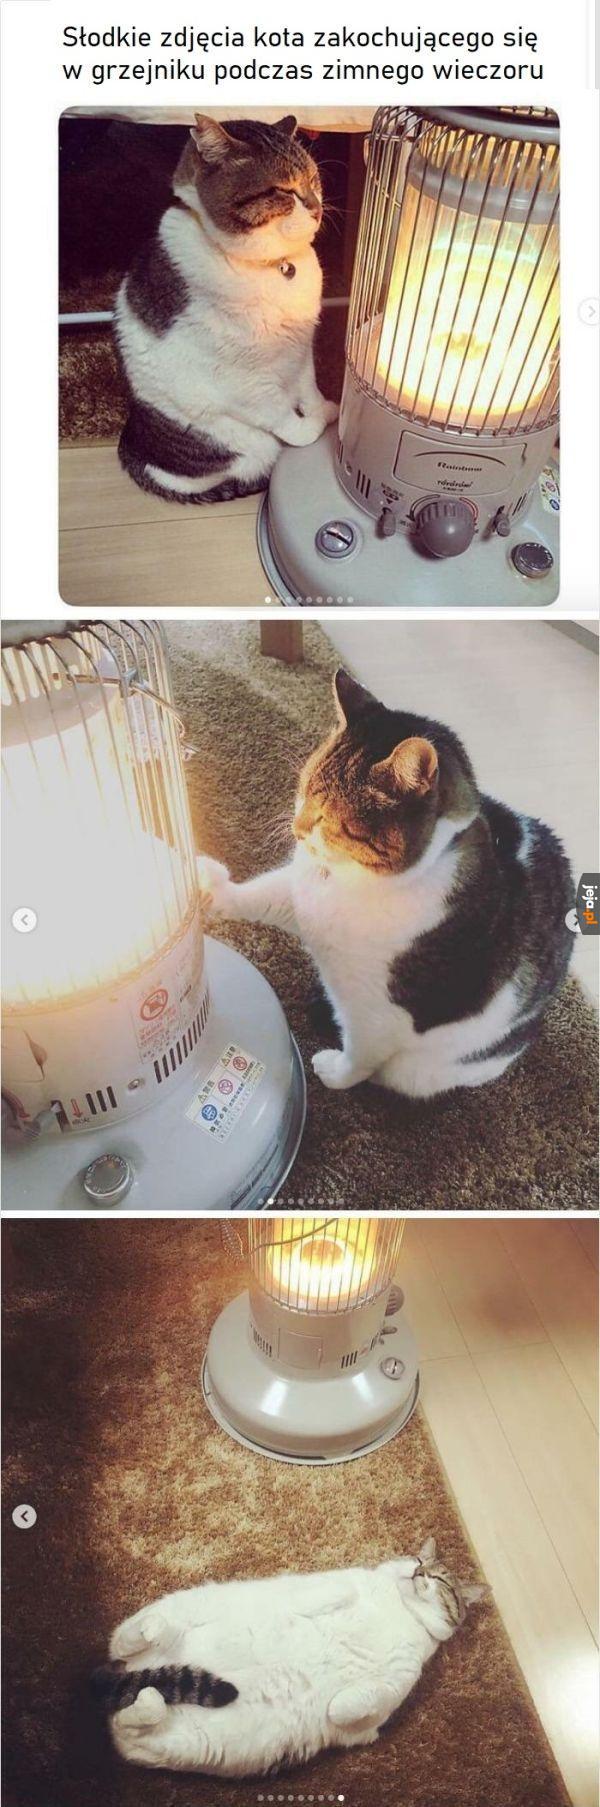 Kotek rozpuścił się od ciepła